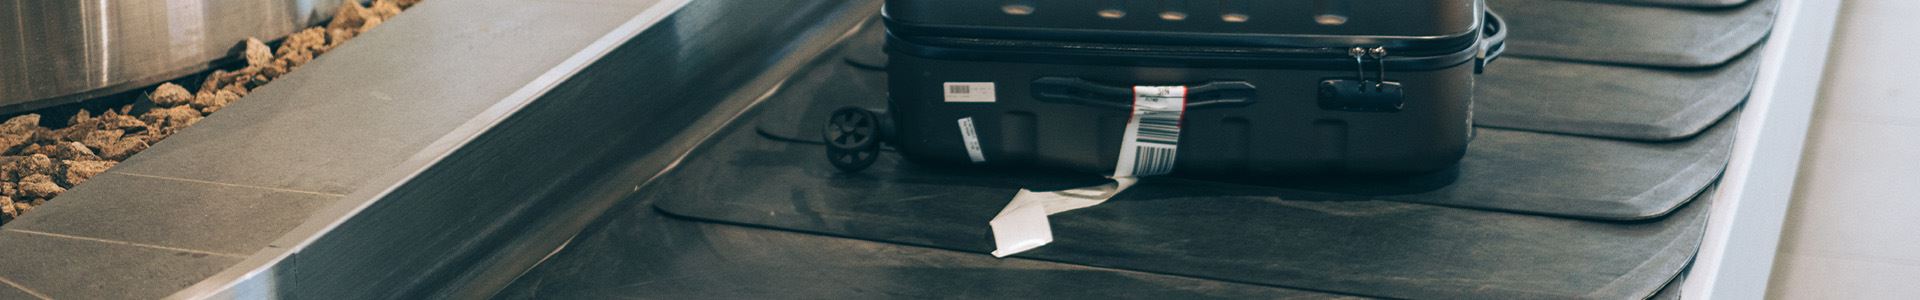 Immagine composta da una valigia nera rigida, con ruote, maniglie superiori e laterali e un'etichetta del bagaglio bianca sulla maniglia laterale, adagiata su un nastro trasportatore per bagagli in aeroporto.